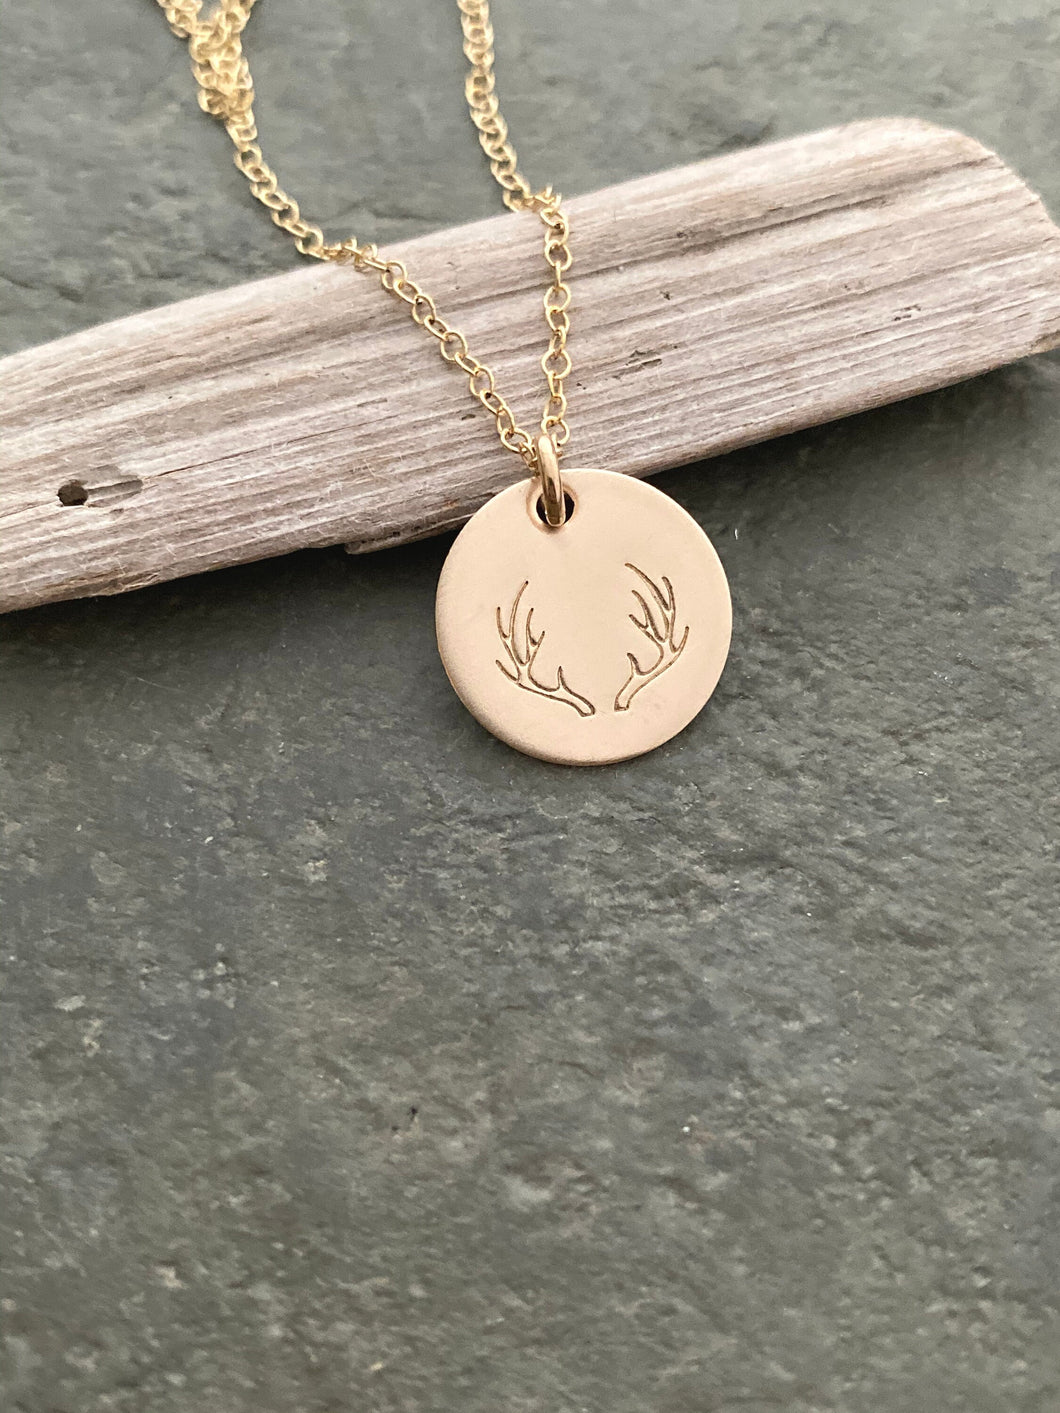 Deer Antler Necklace, 14k Gold filled Disc with deer antler design  Hand Stamped, Outdoor girl jewelry, Hunter necklace